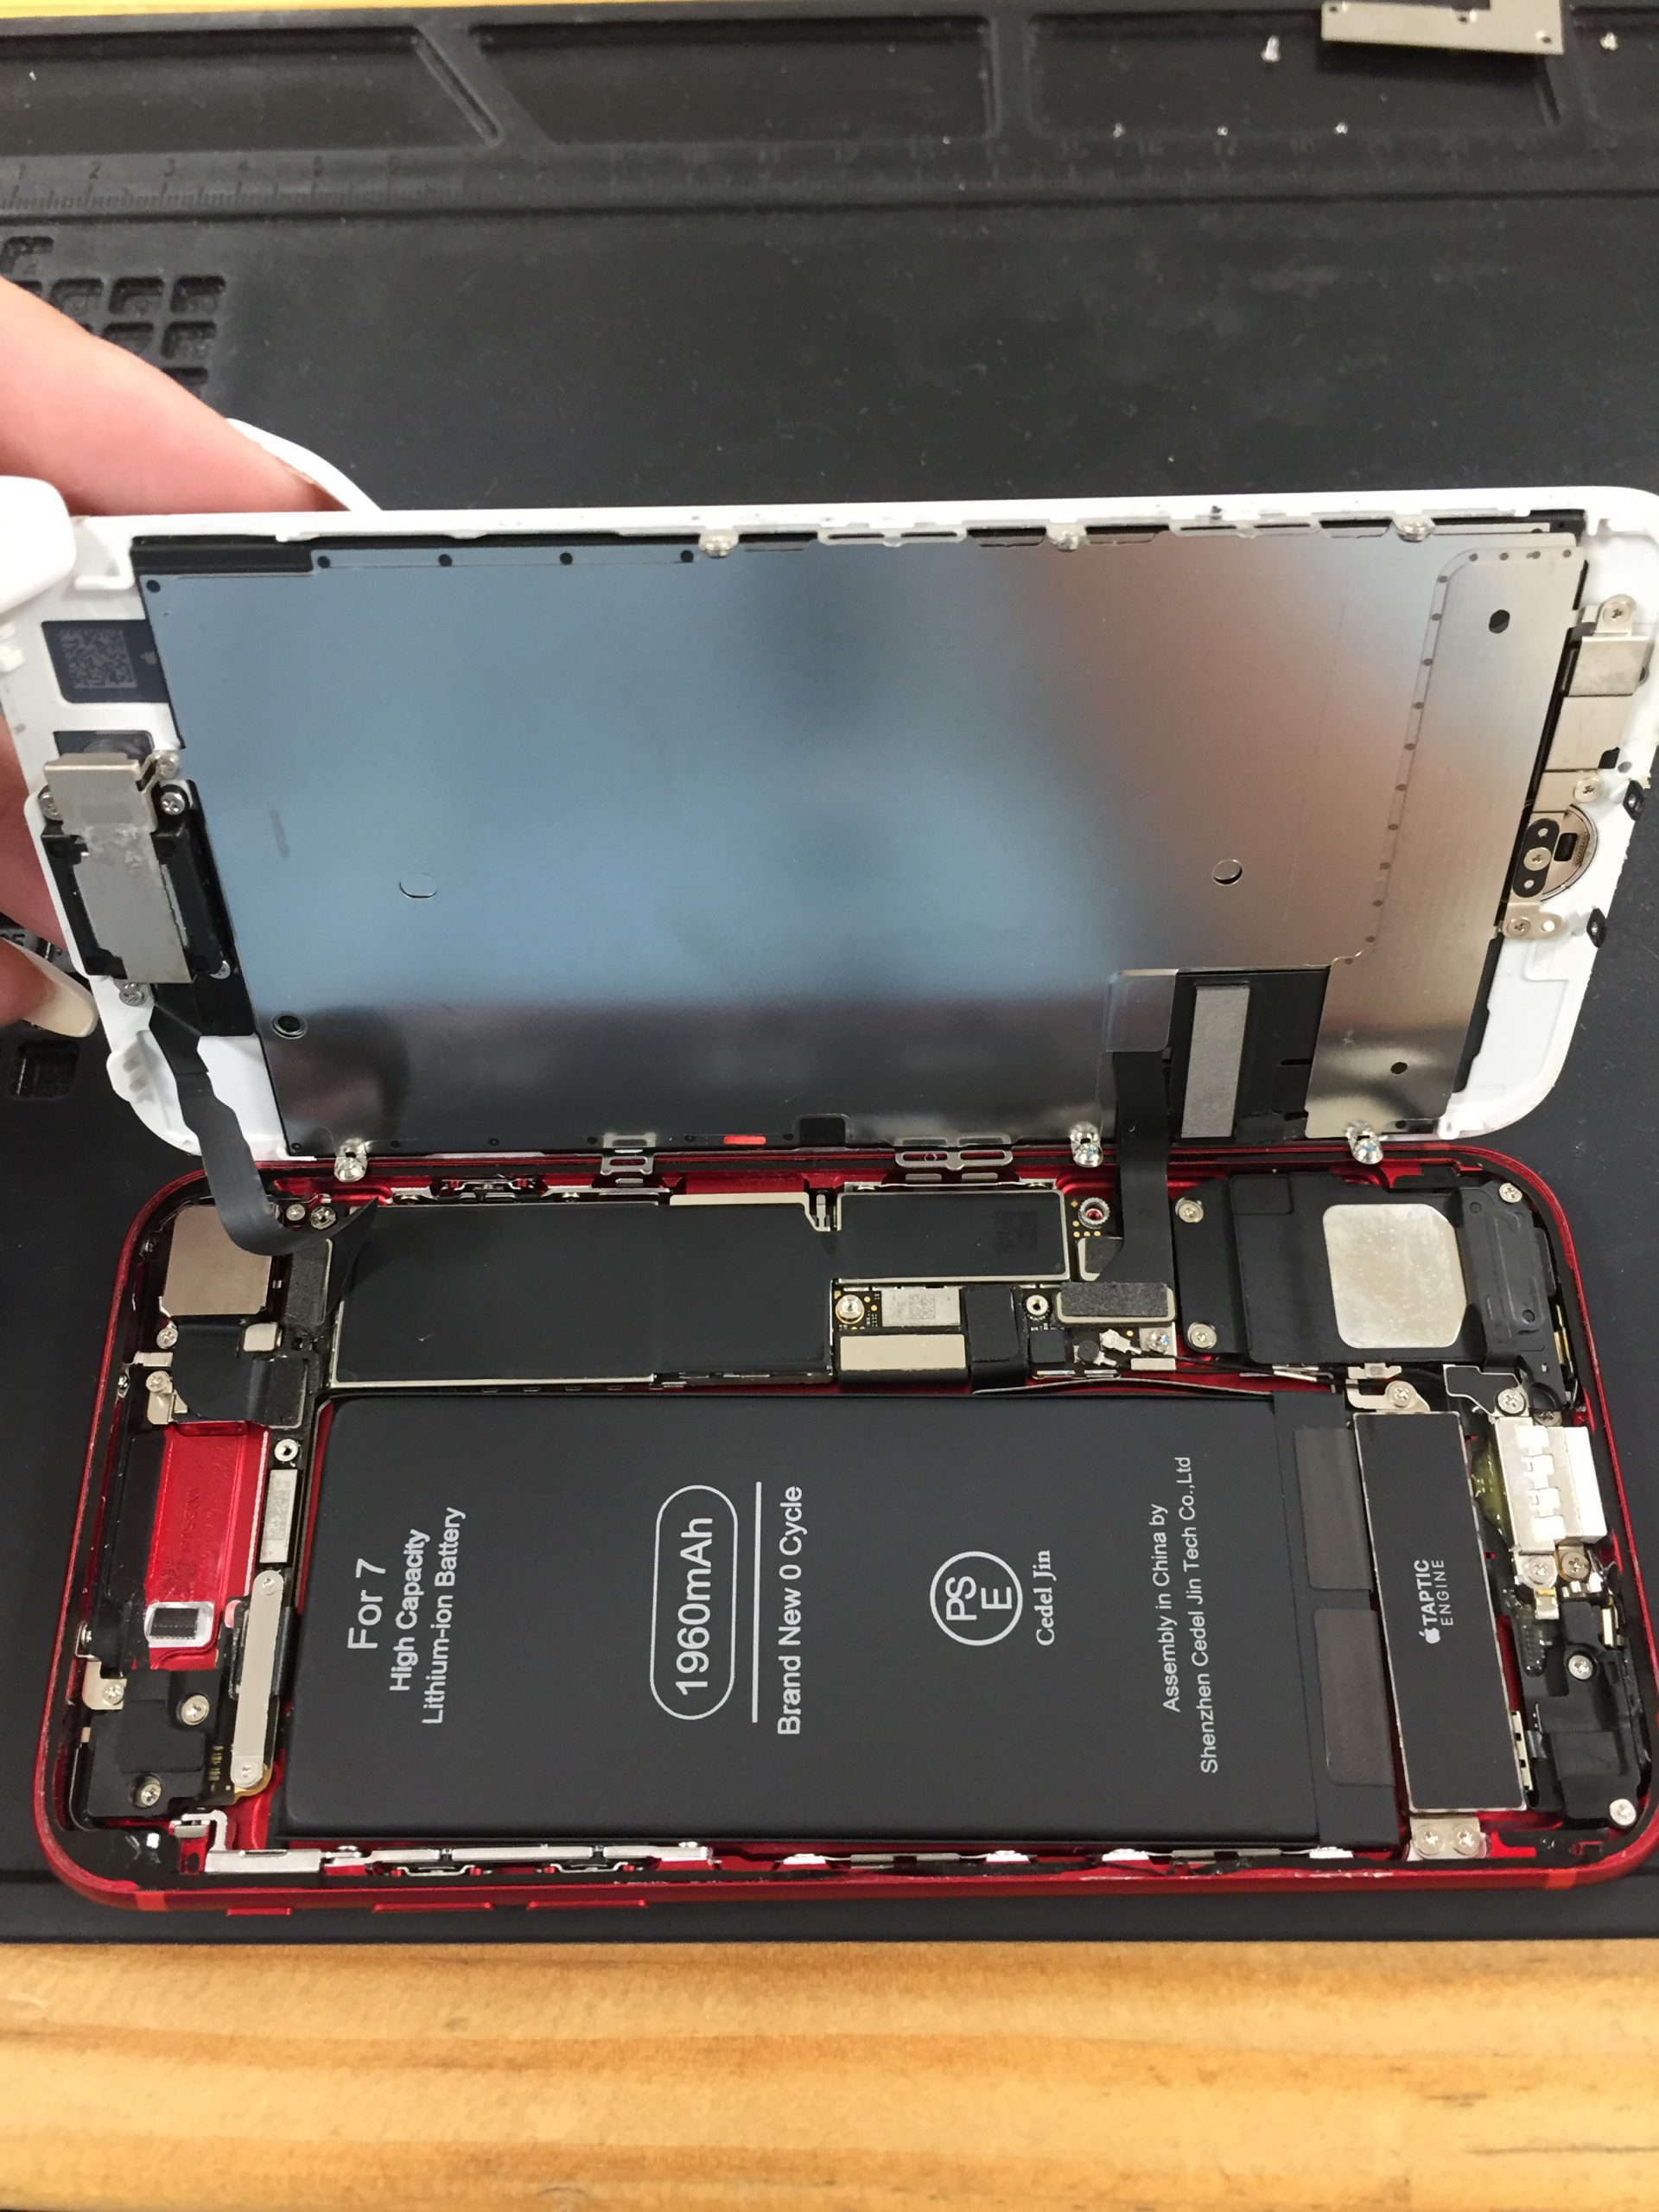 海老名 Iphone Iphone7 バッテリー劣化でエラーメッセージ 即日修理iphone Ipad Android修理のモバイアス イオン海老名店